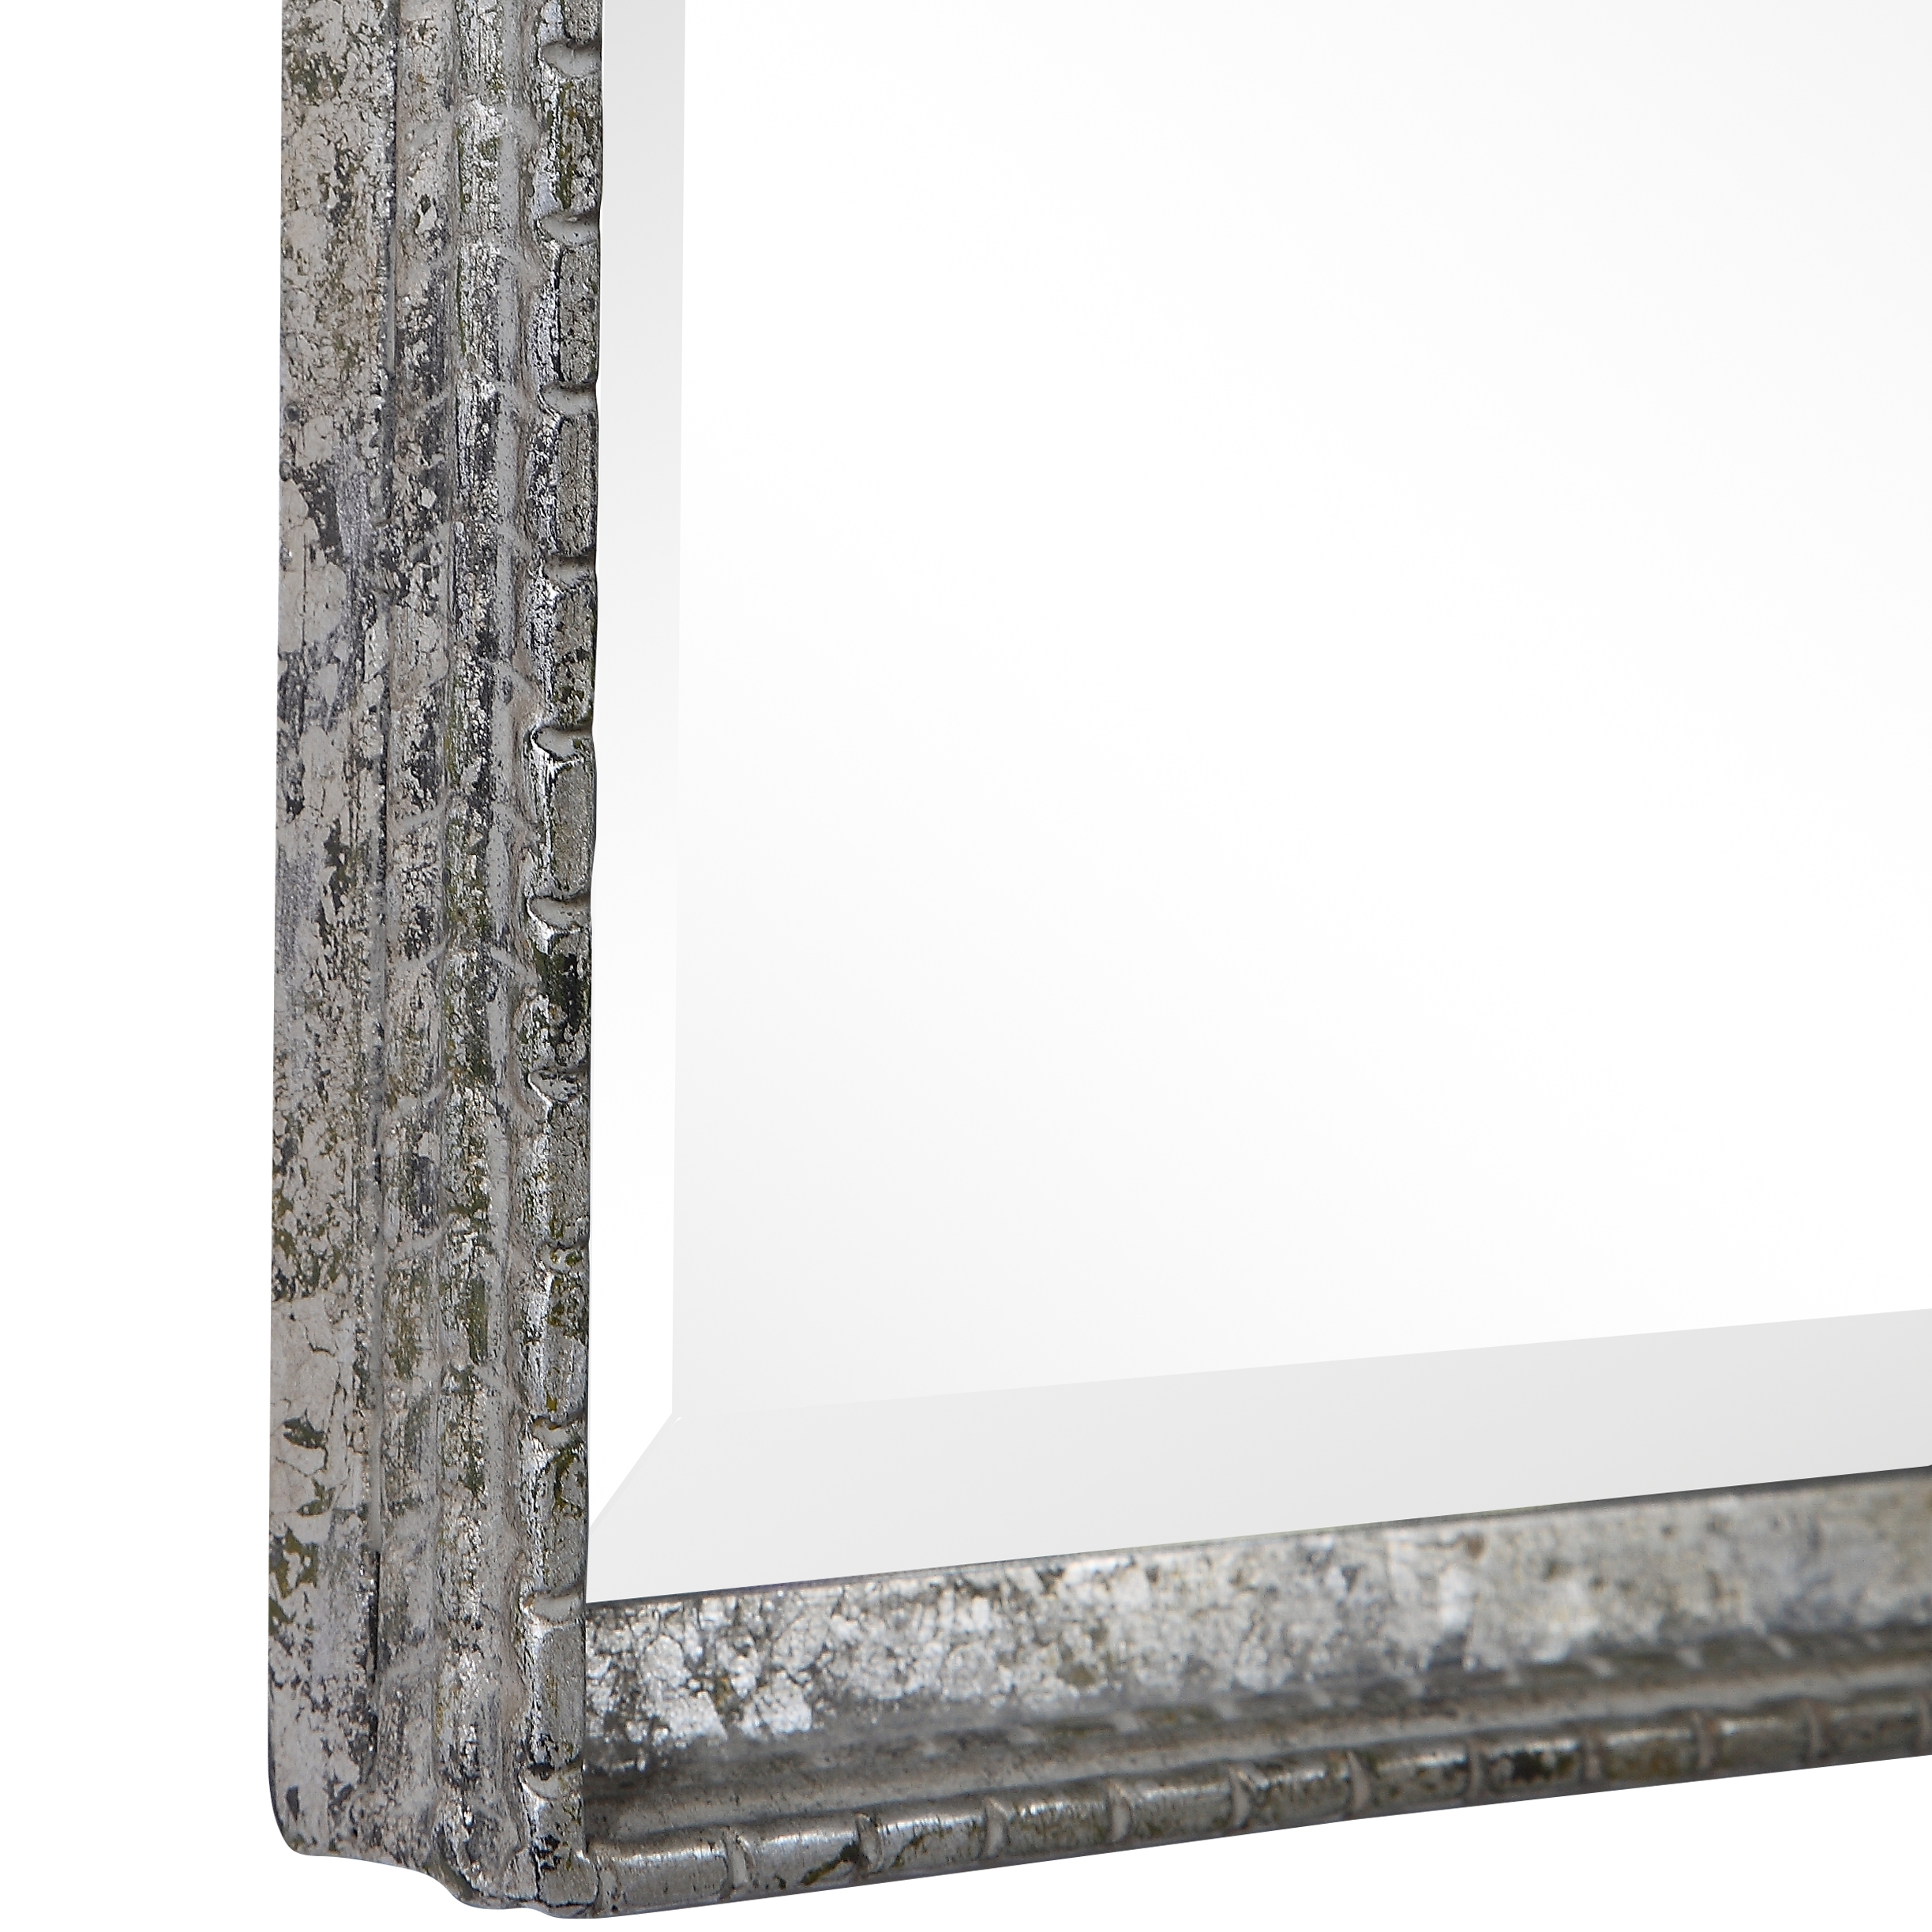 Callan Silver Vanity Mirror - Image 1